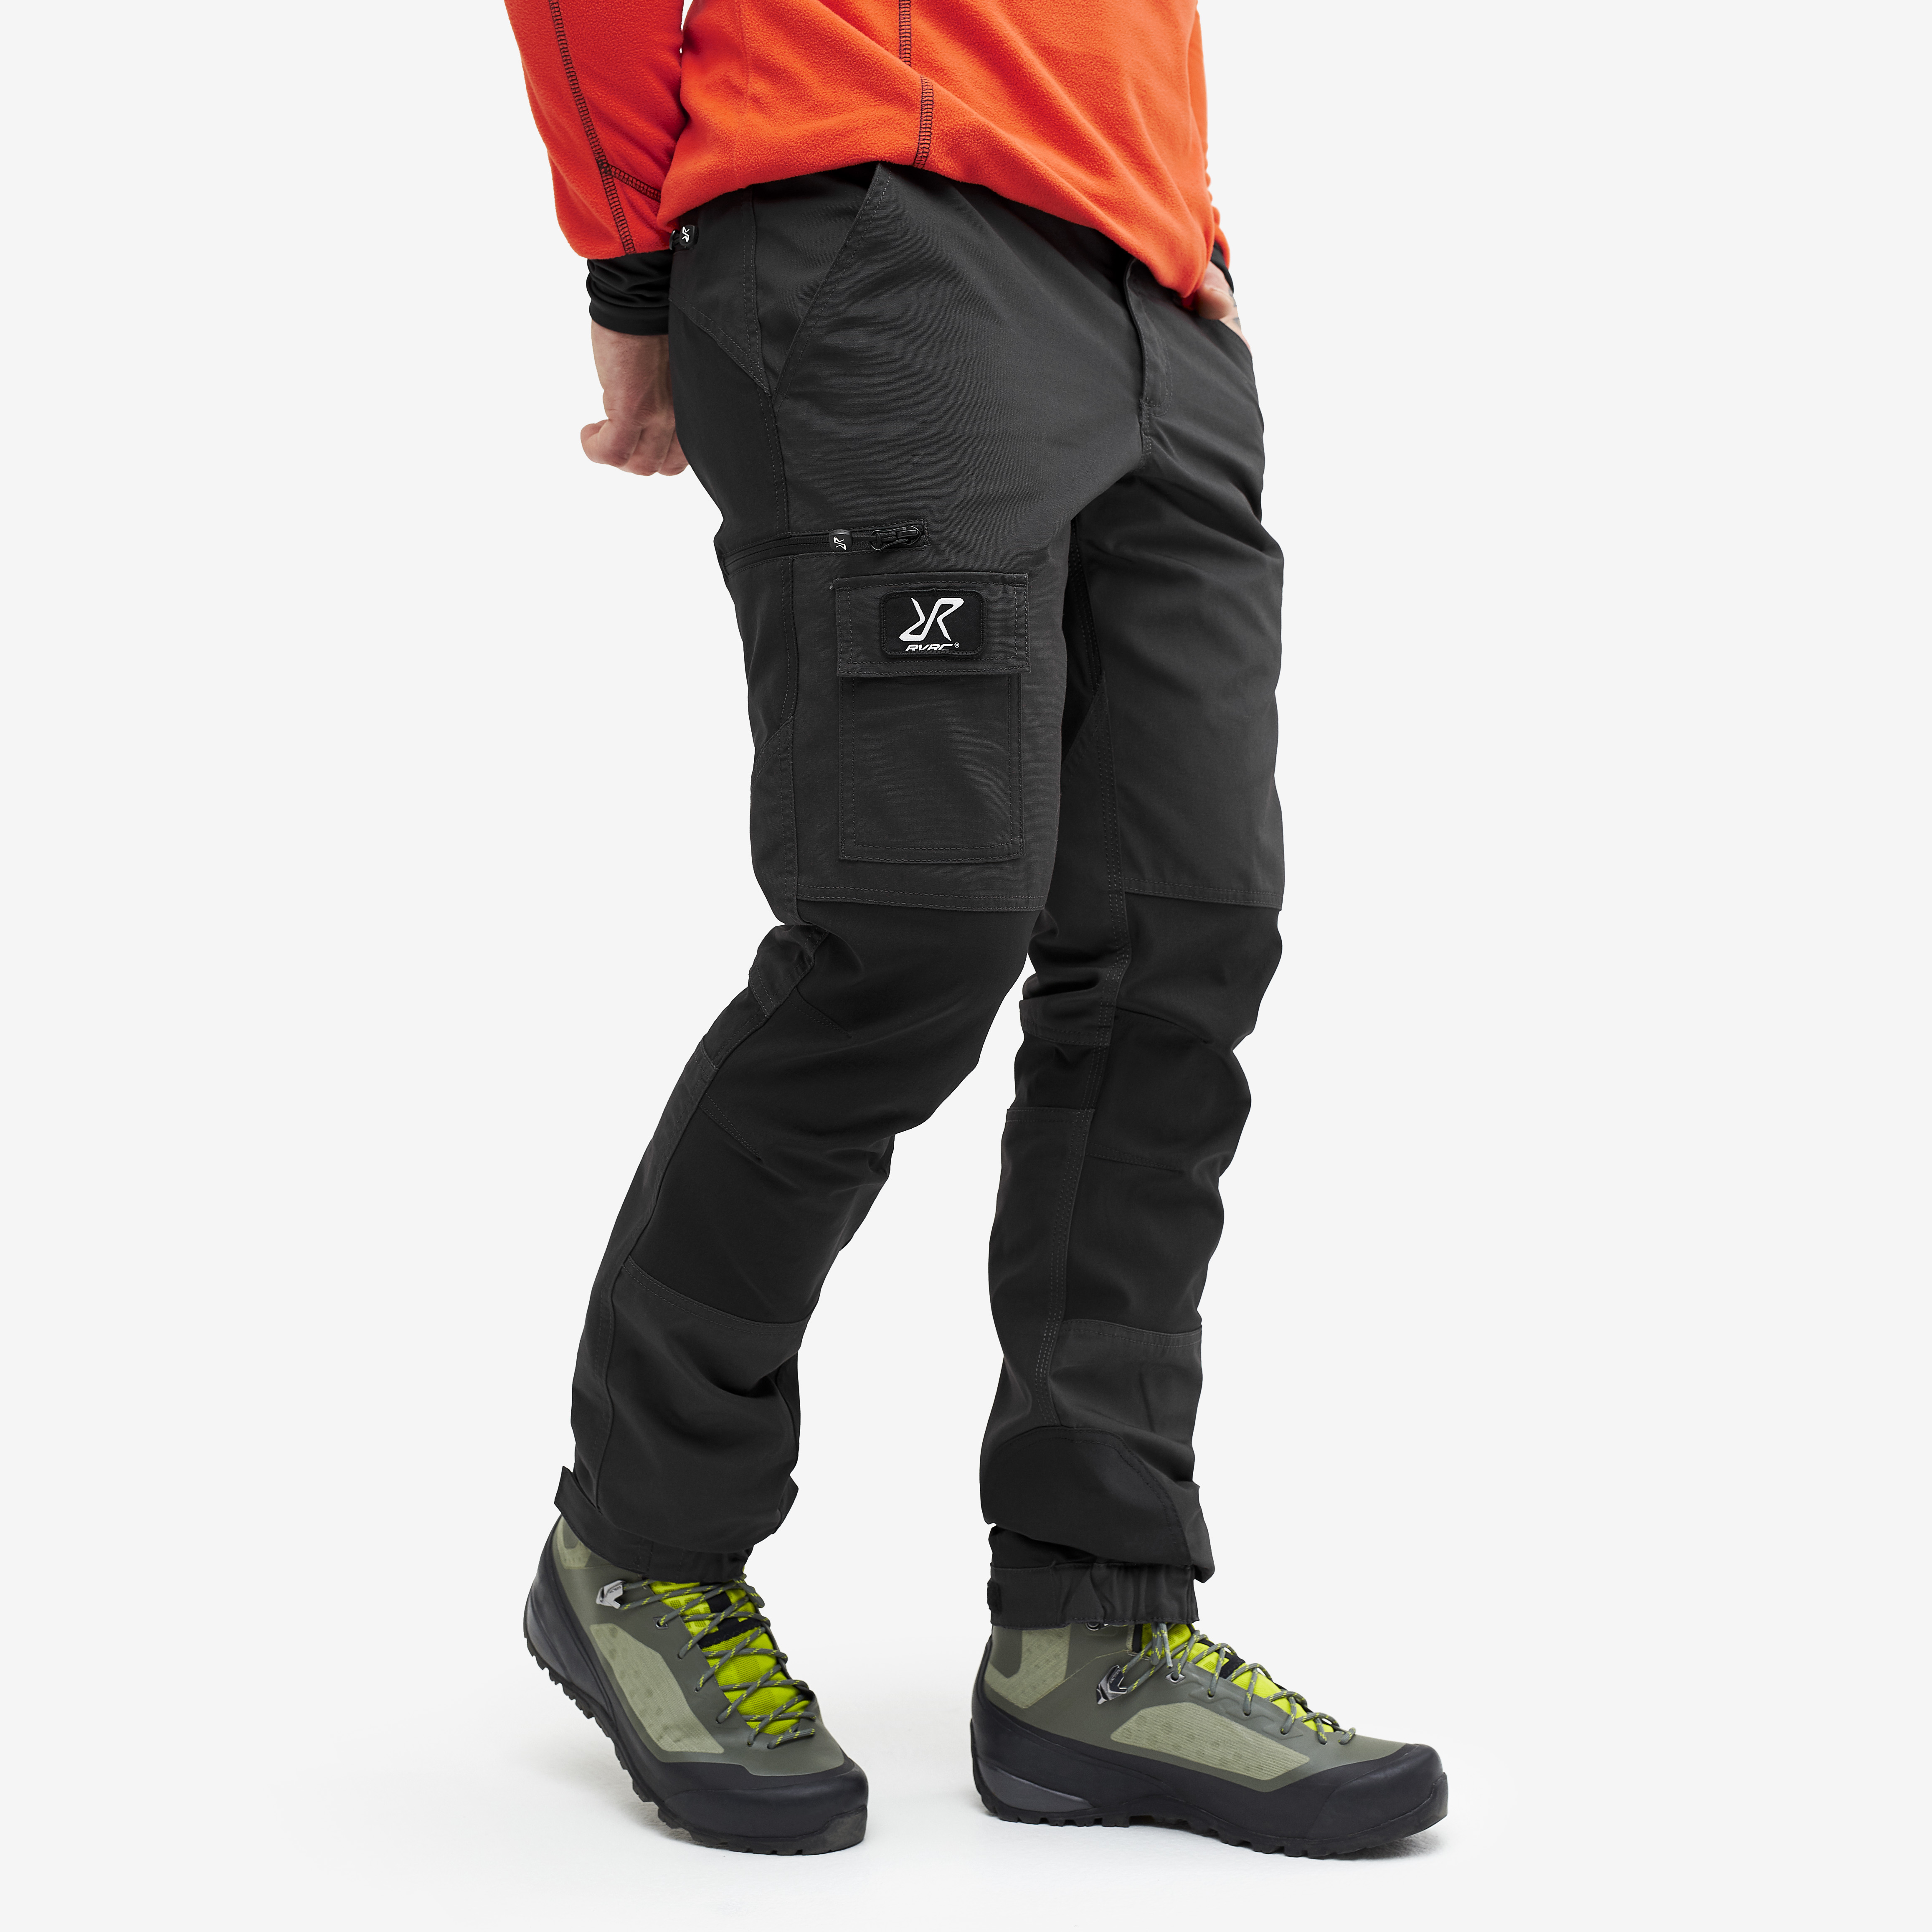 Nordwand outdoor pants for men in dark grey